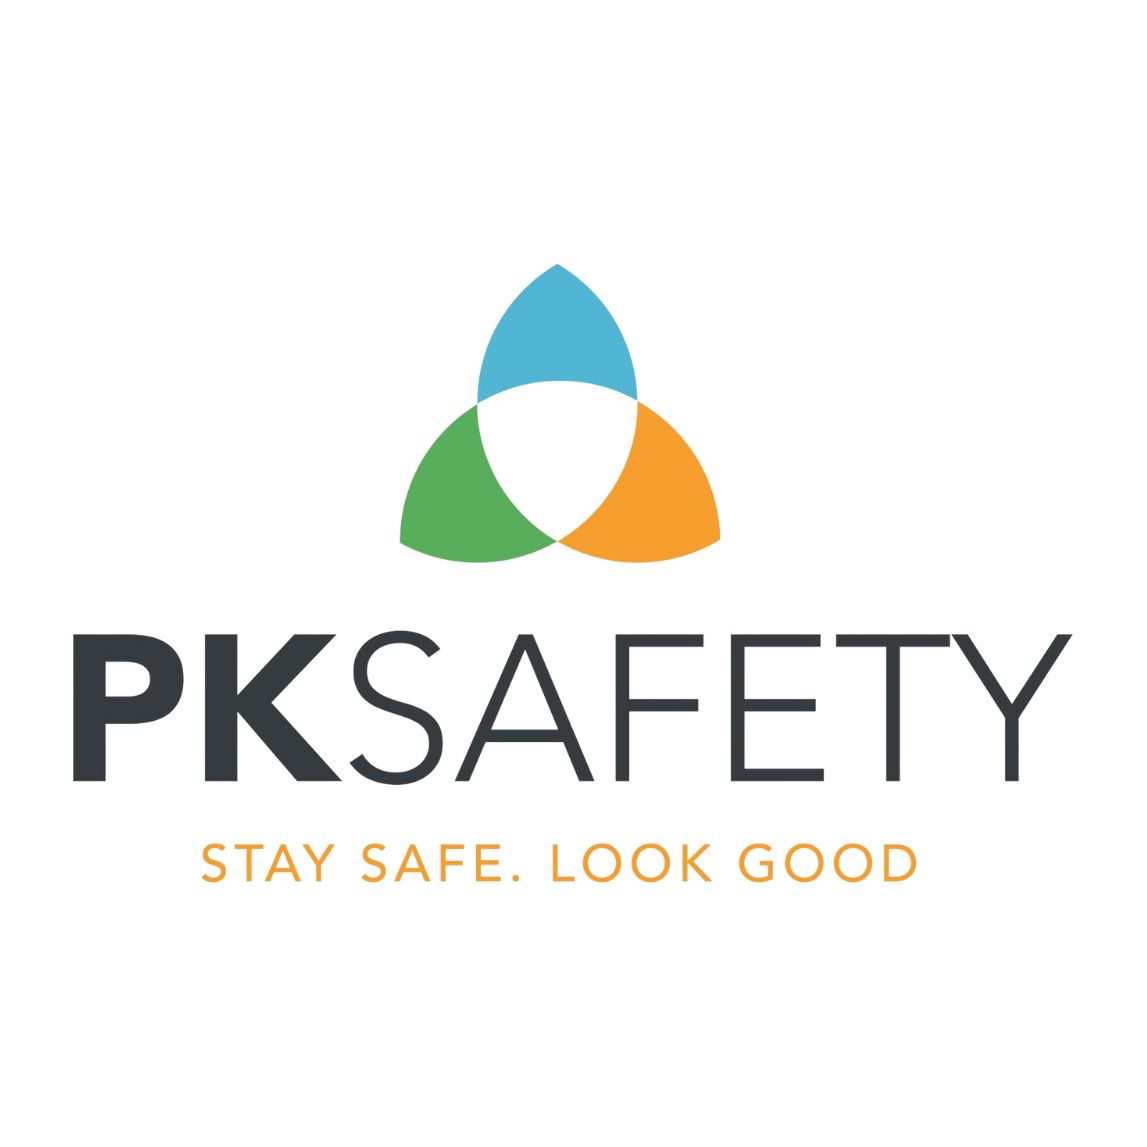 PK Safety logo